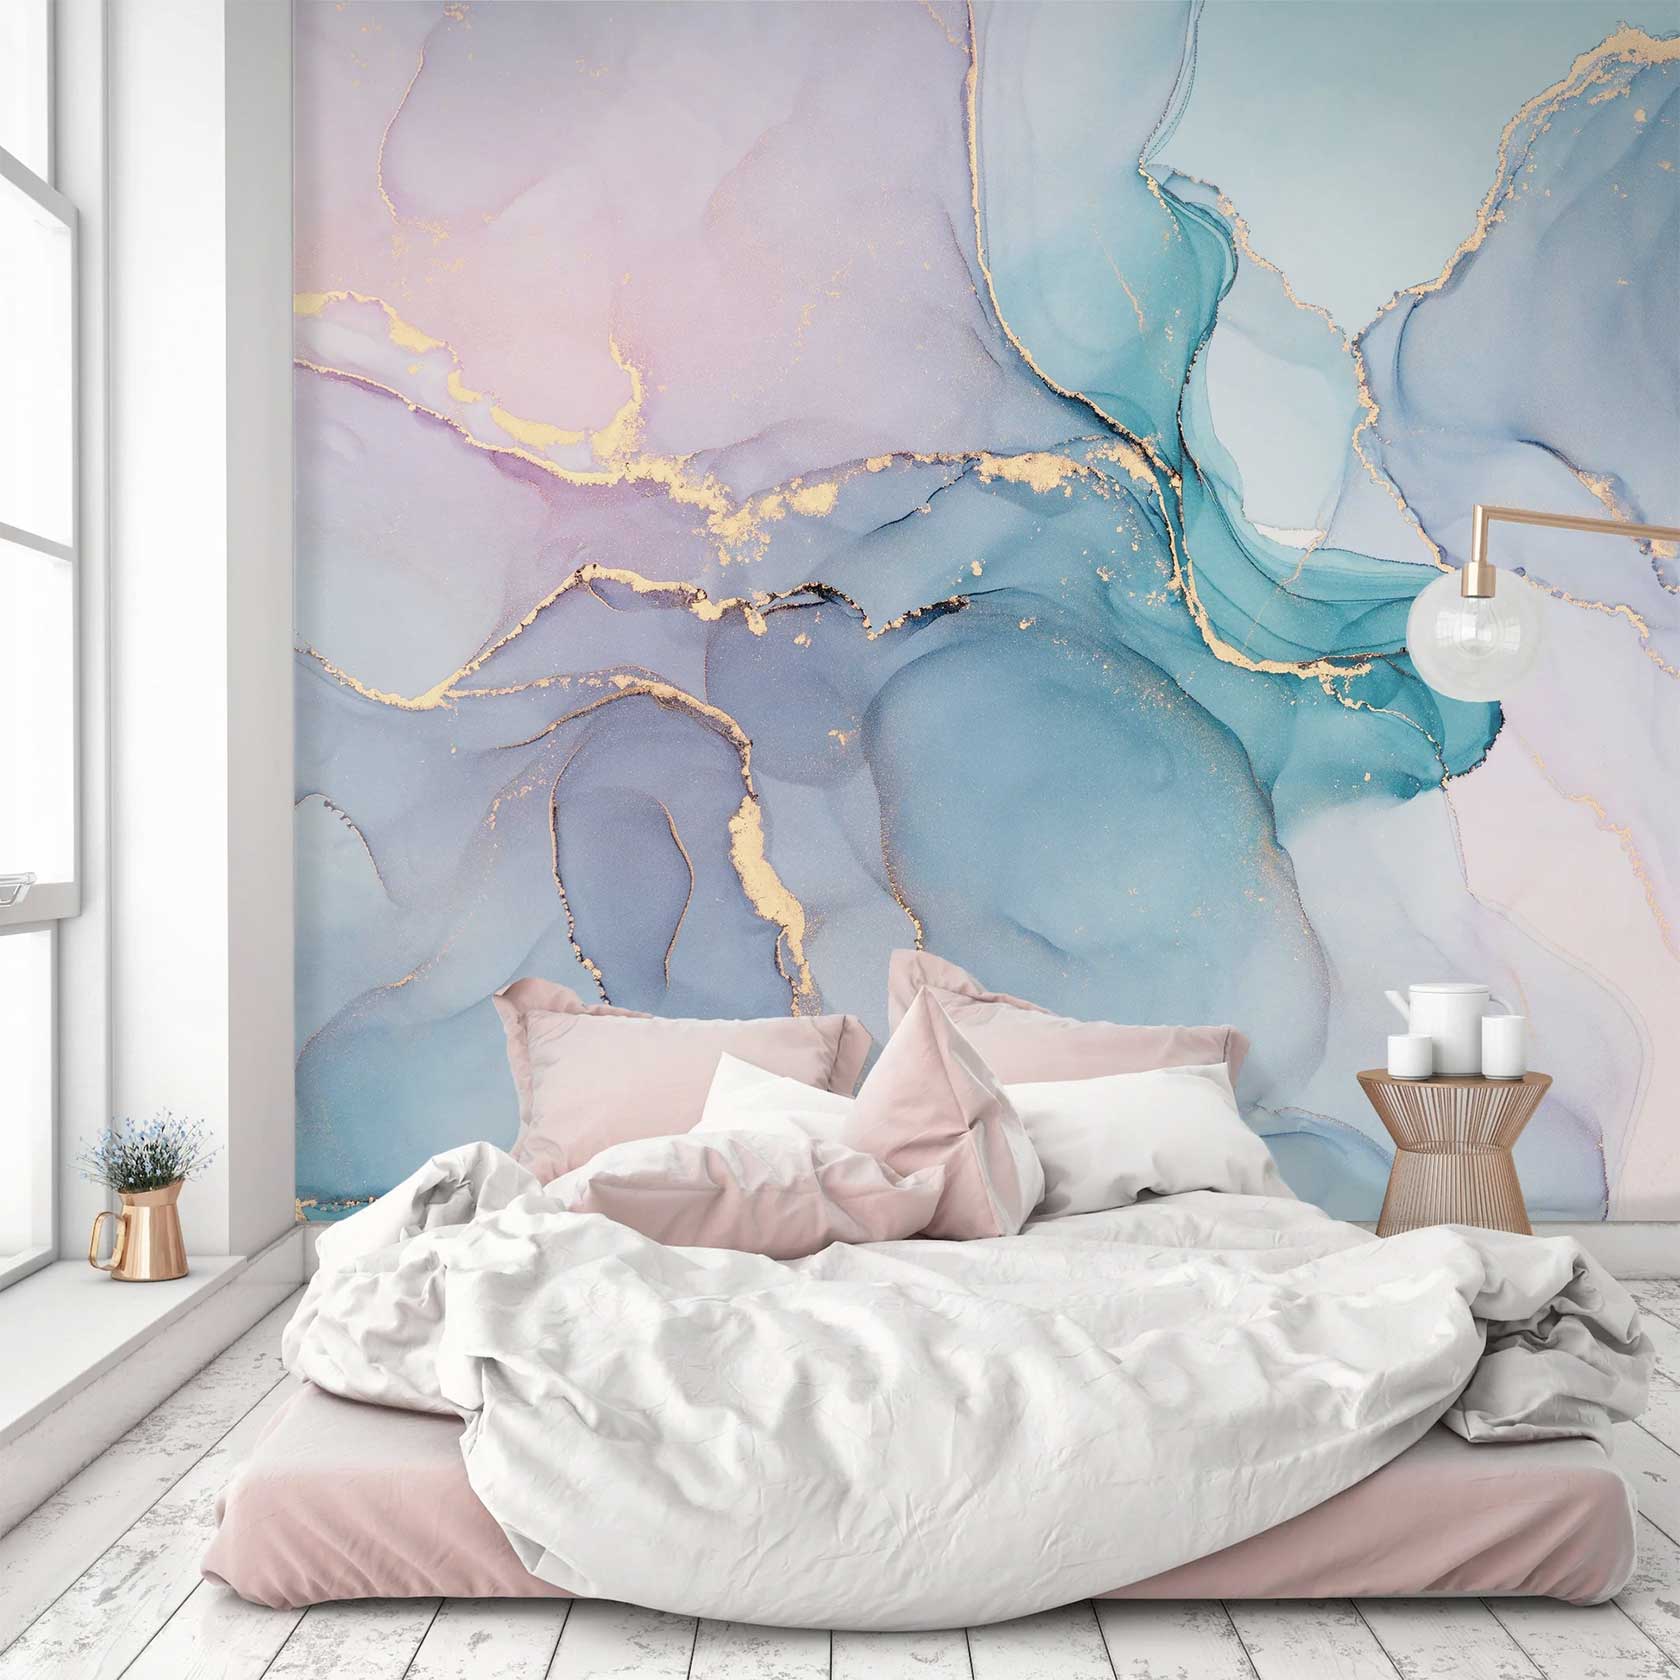 wallpaper murals for your bedroom